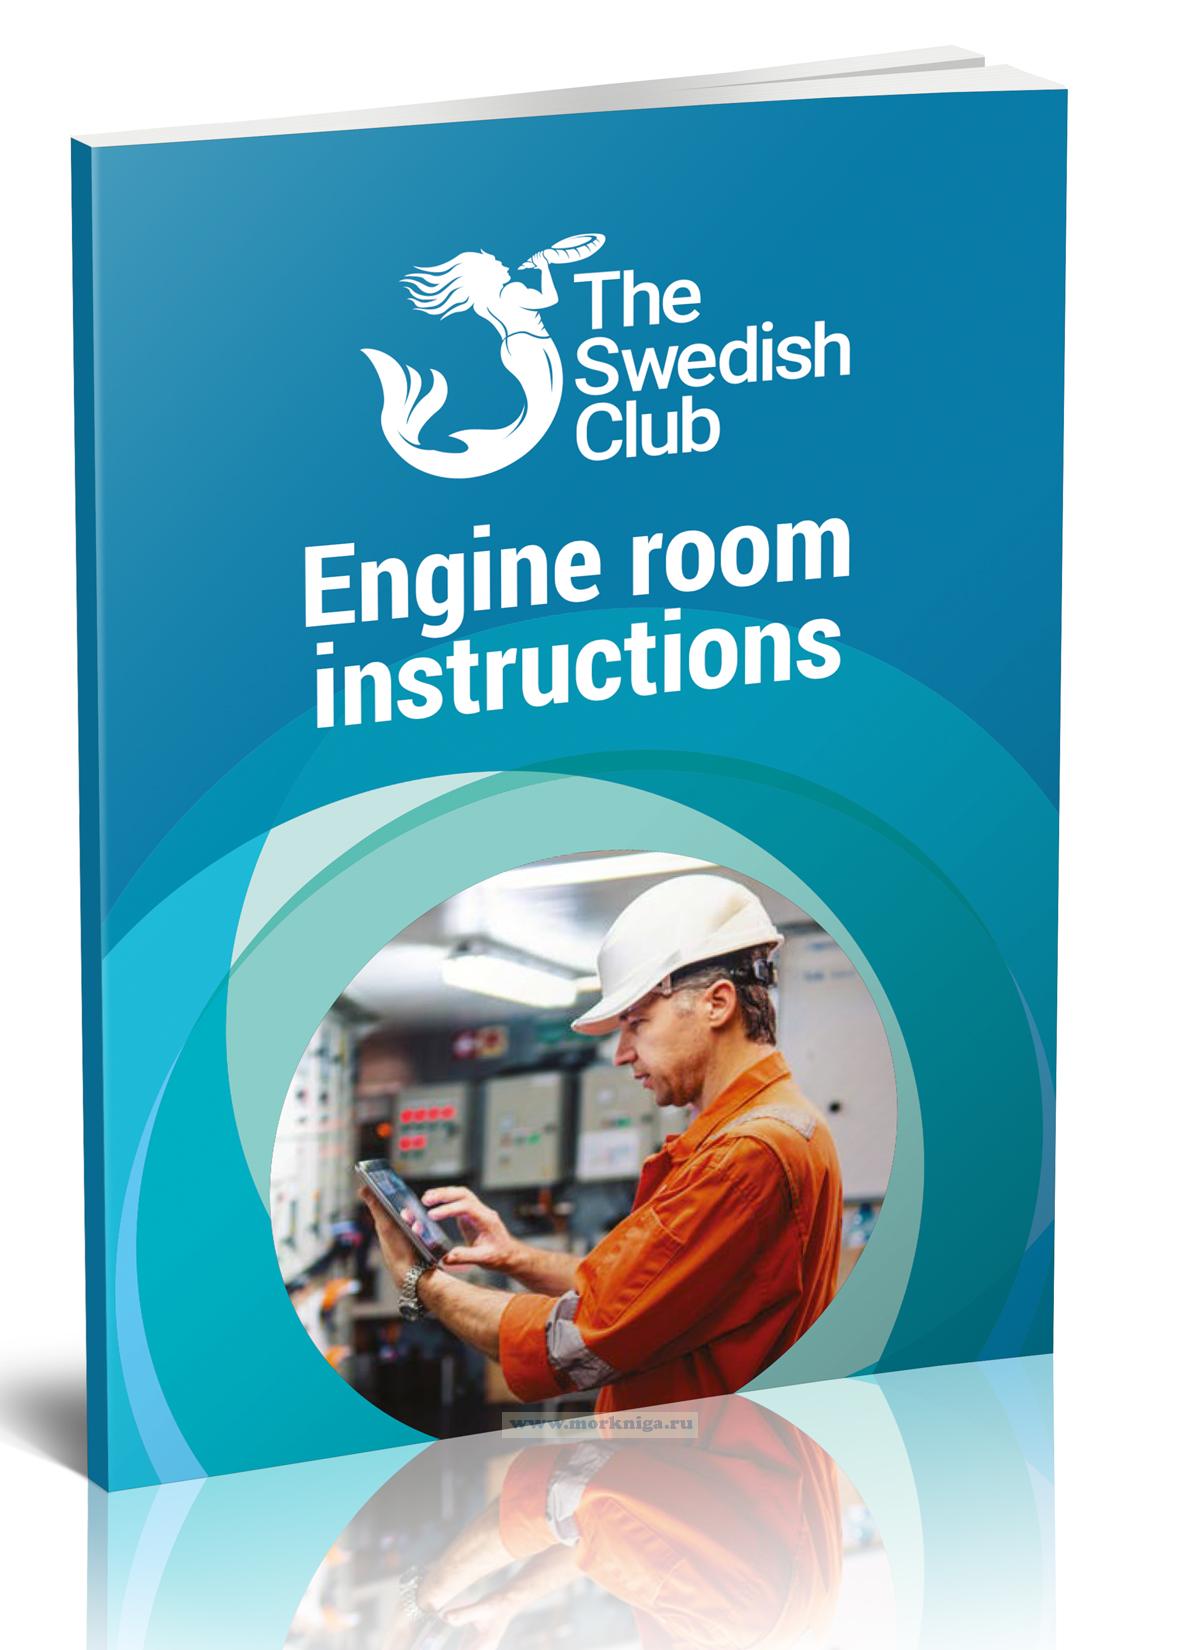 Engine room instructions/Инструкции для машинного отделения